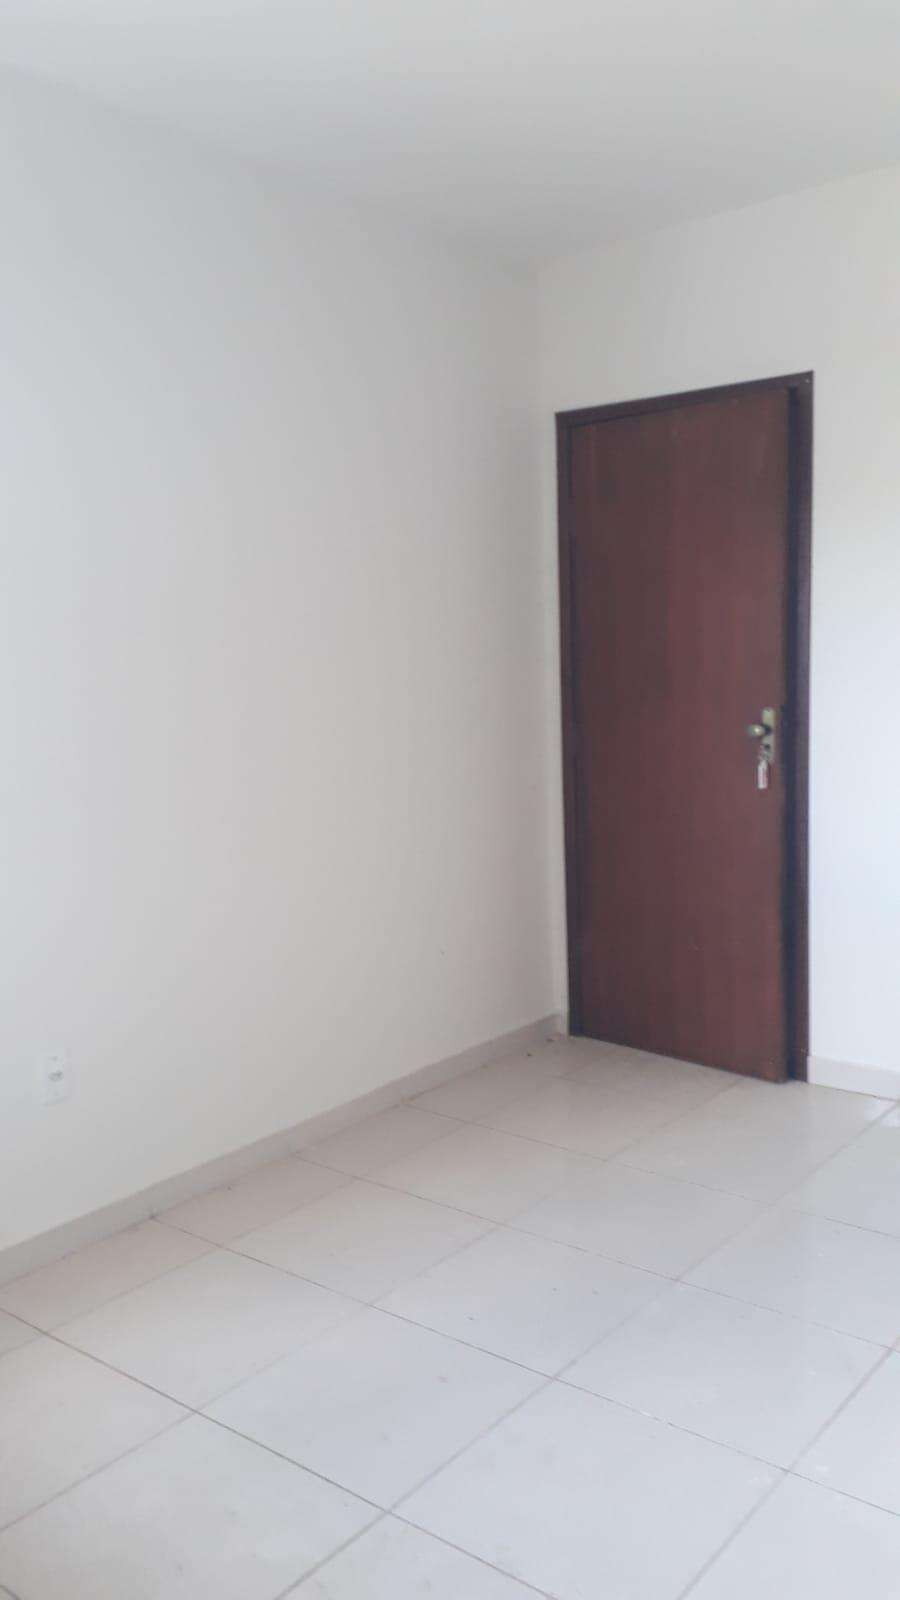 Apartamento 3 quartos à venda no Limoeiro: fba99f98-9-whatsapp-image-2023-04-11-at-10.34.11-1.jpeg